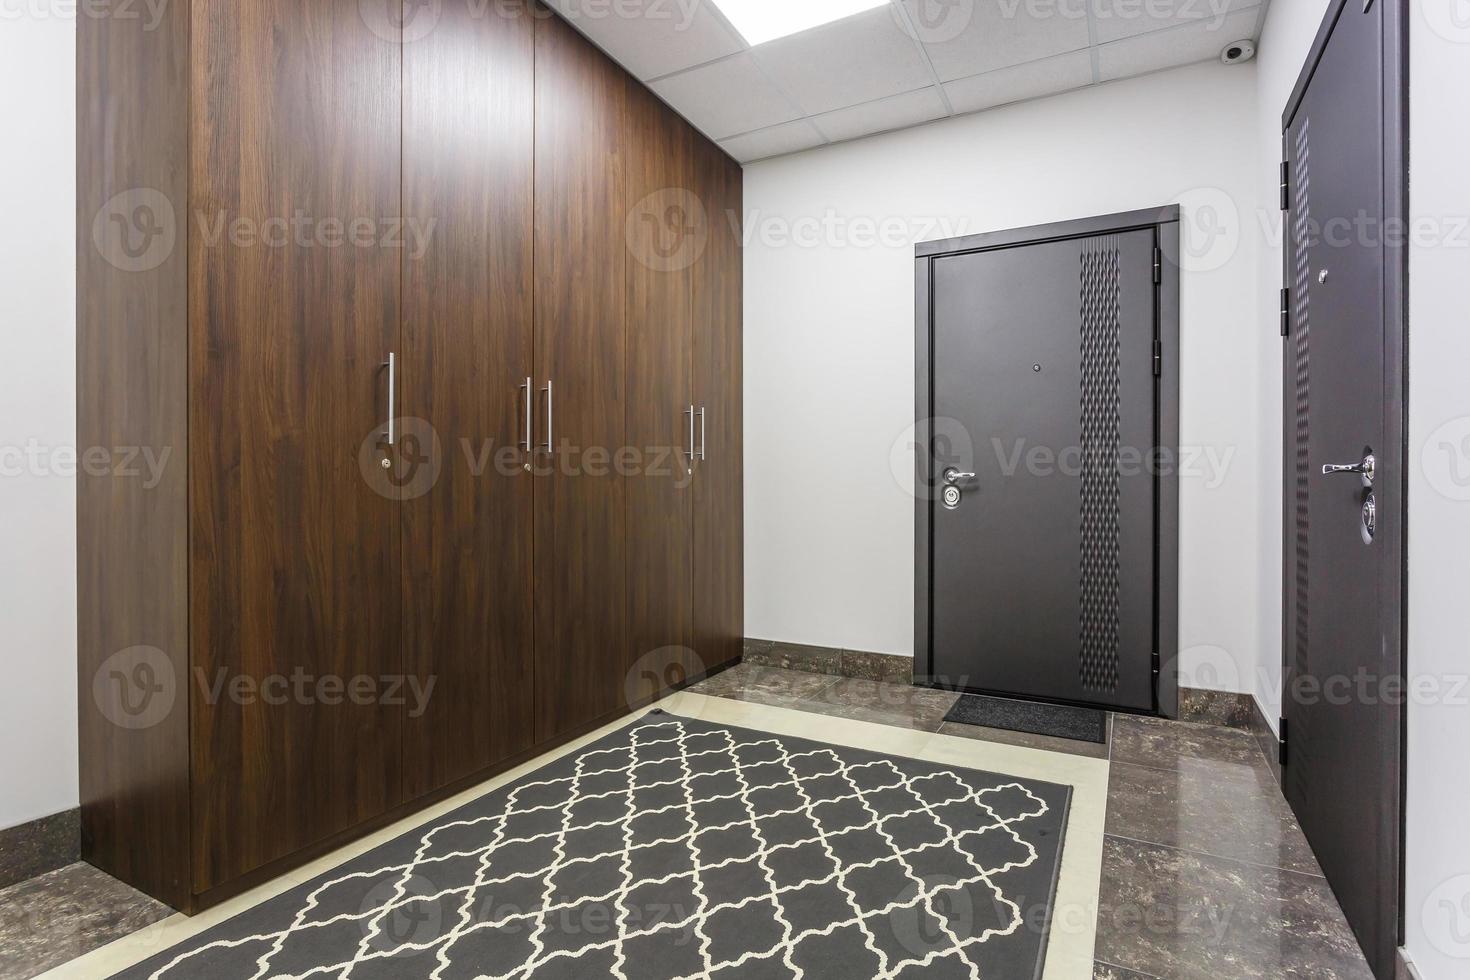 tömma korridor för rum i interiör av modern lägenheter, kontor eller klinik med många metall dörrar foto